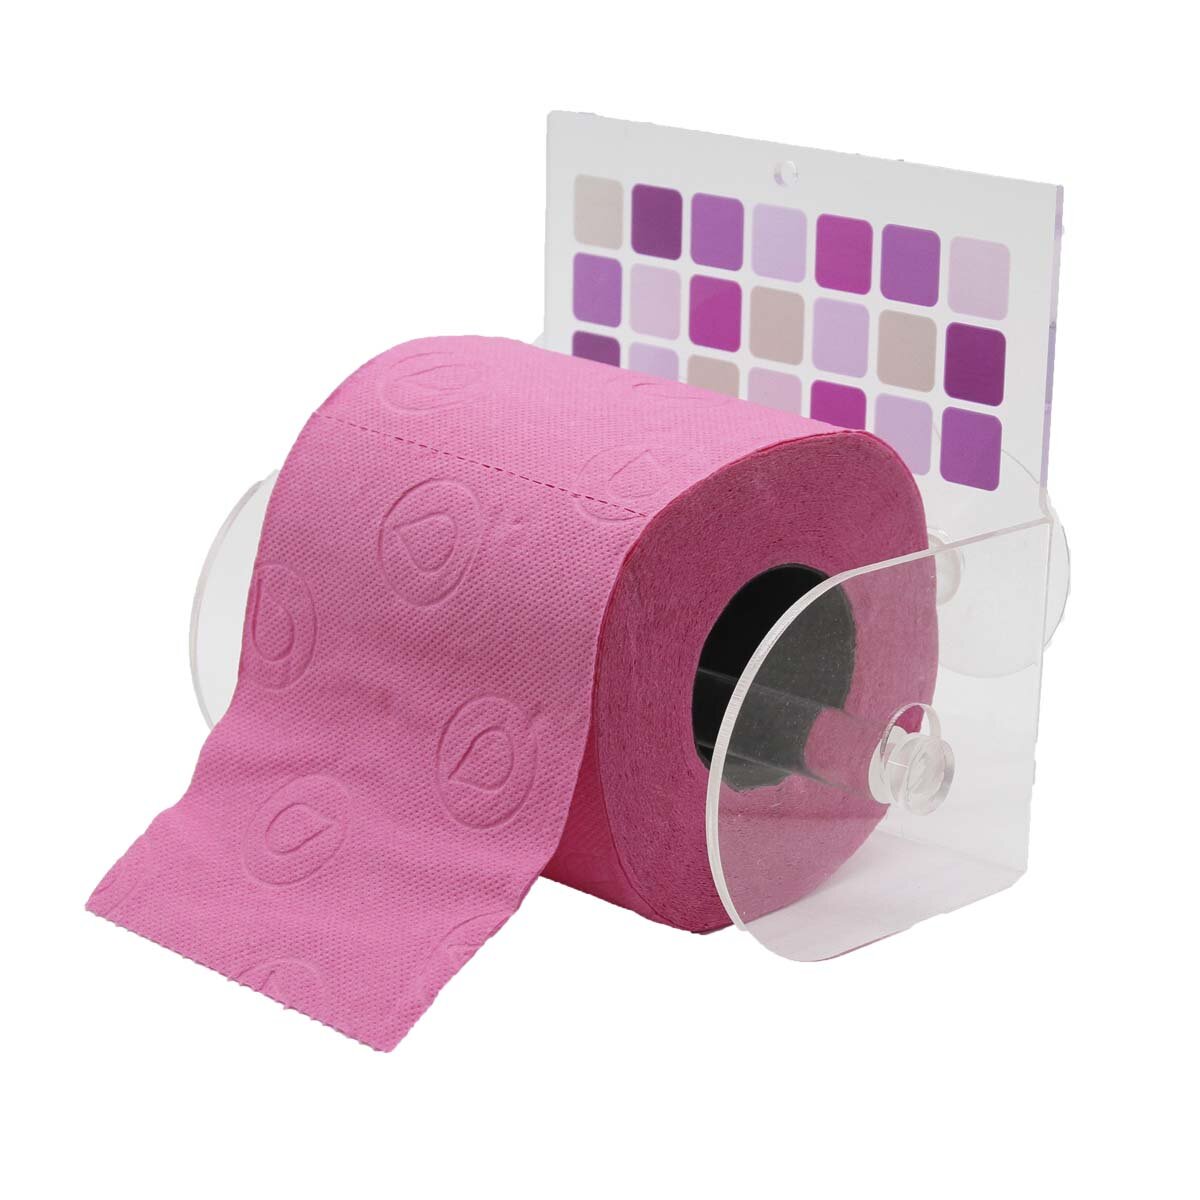 Розовая туалетная бумага. Фиолетовая туалетная бумага. Держатель для туалетной бумаги розовый. Держатель для туалетной бумаги красный. Розовая туалетная бумага с сердечками.